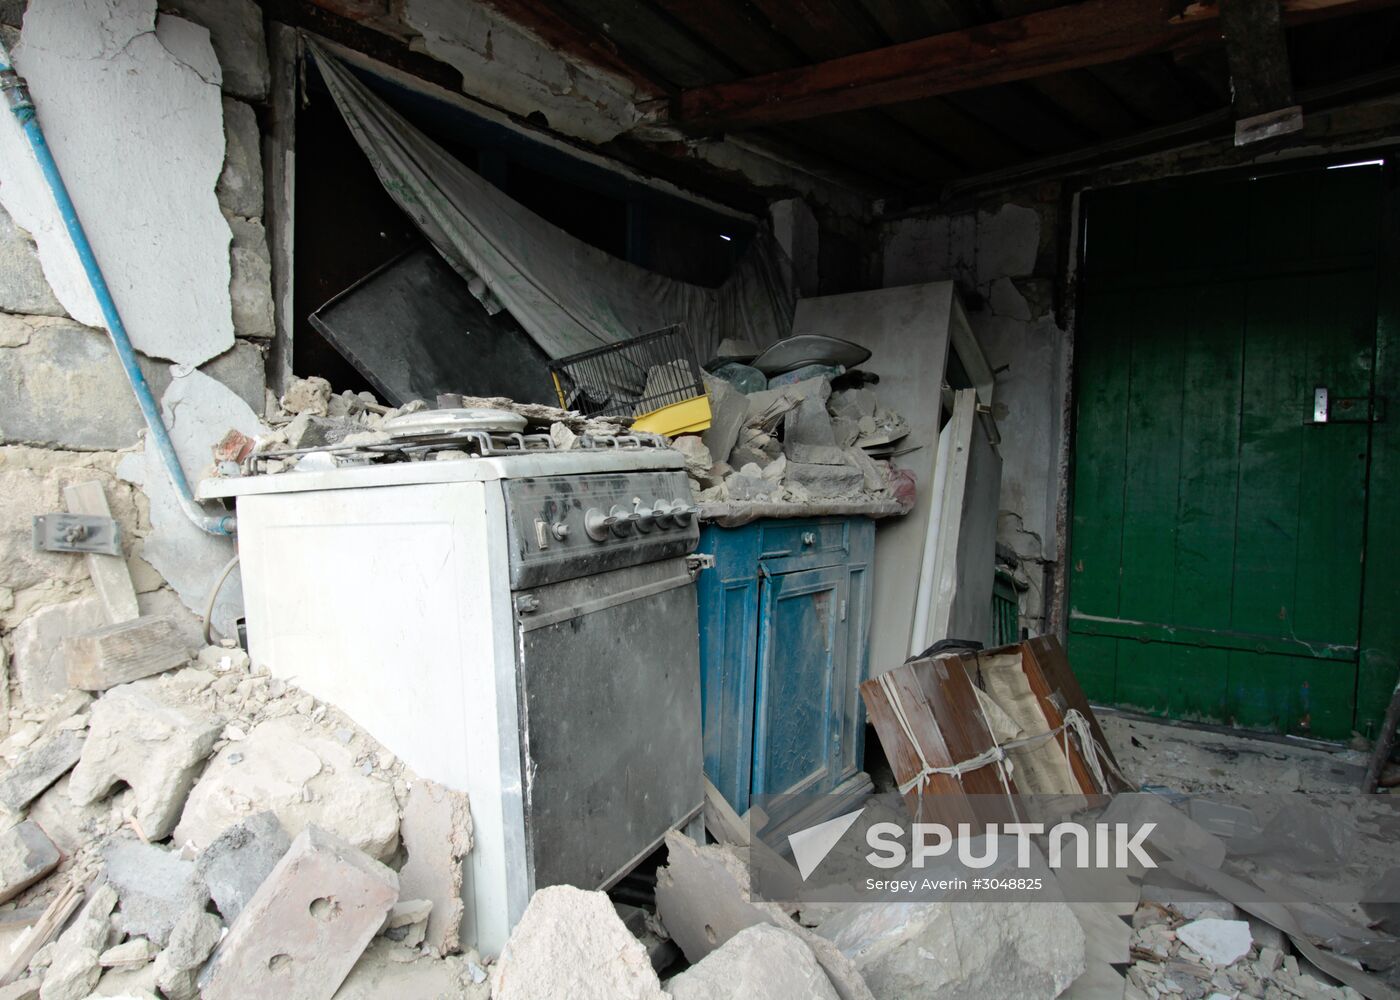 Aftermath of shelling in Luganskoye, Donetsk Region